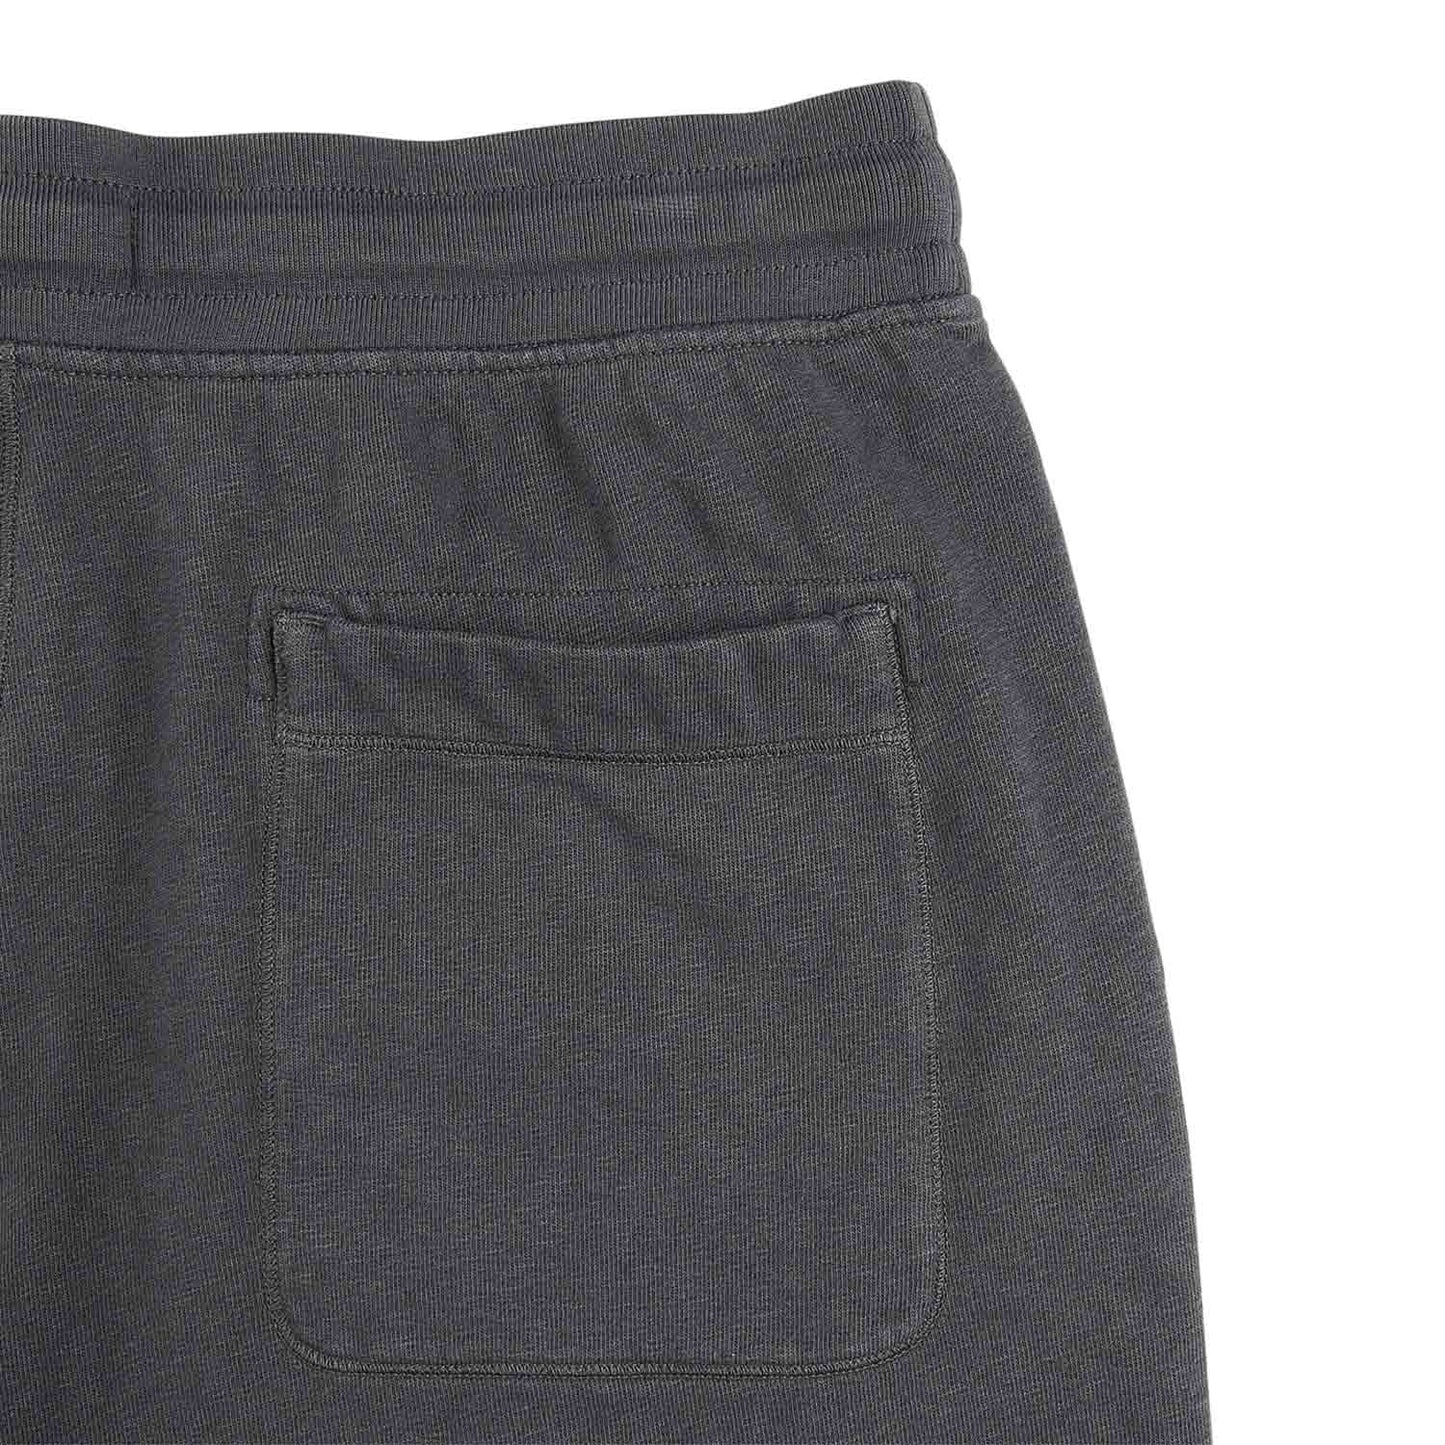 stone island fleece shorts (charcoal)